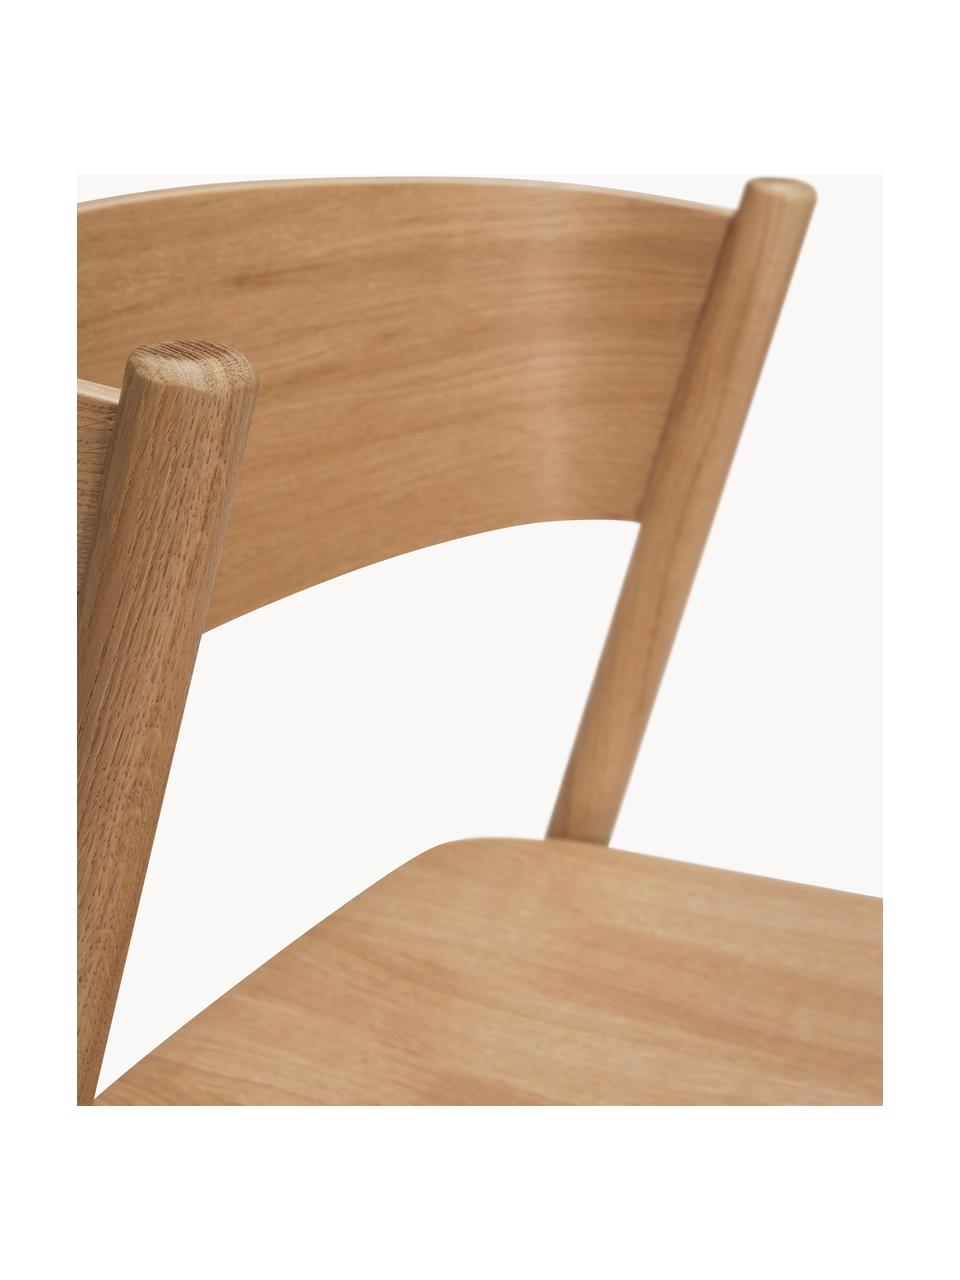 Stołek barowy Oblique, Stelaż: drewno bukowe, drewno dęb, Drewno dębowe, S 50 x W 103 cm